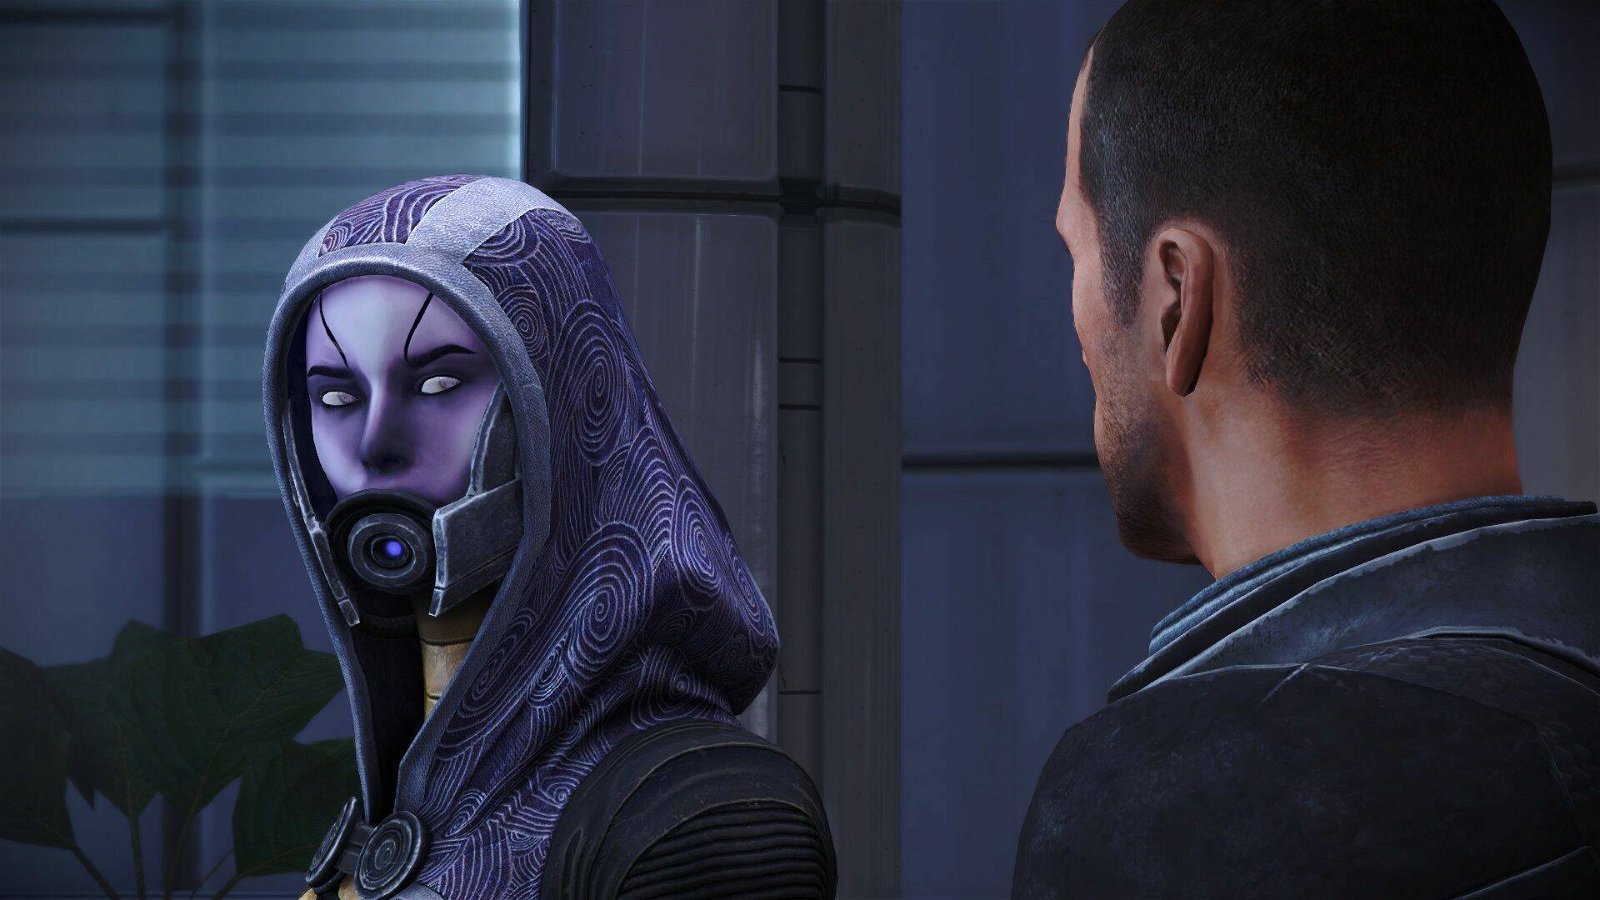 Mass Effect, come fosse un gioco alla Diablo, è affascinante